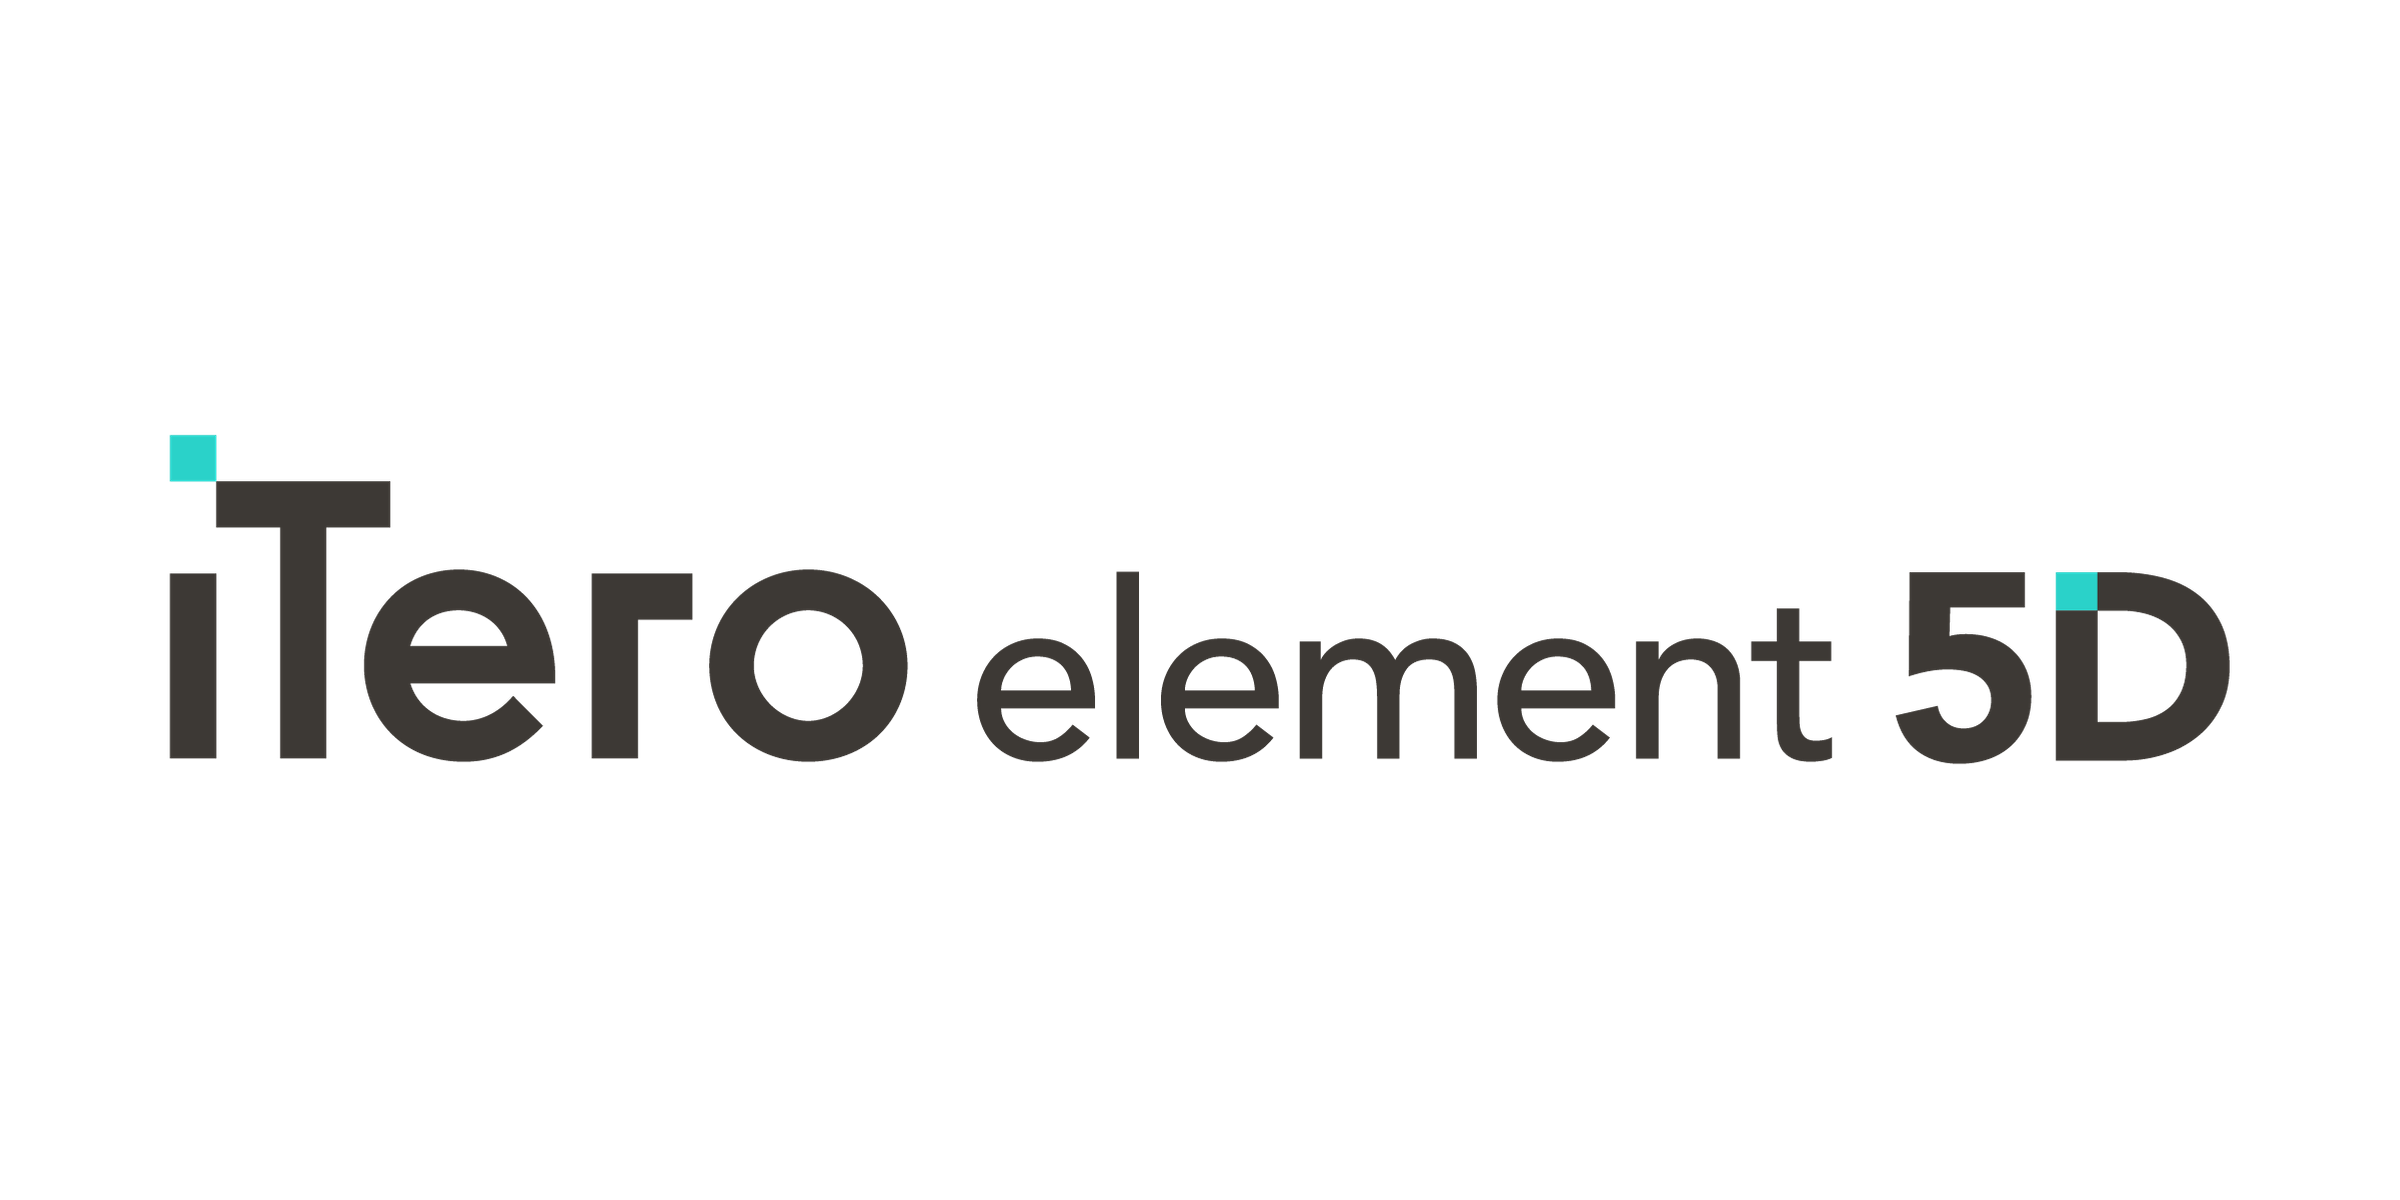 口腔内スキャナー｢iTero Element 5D｣